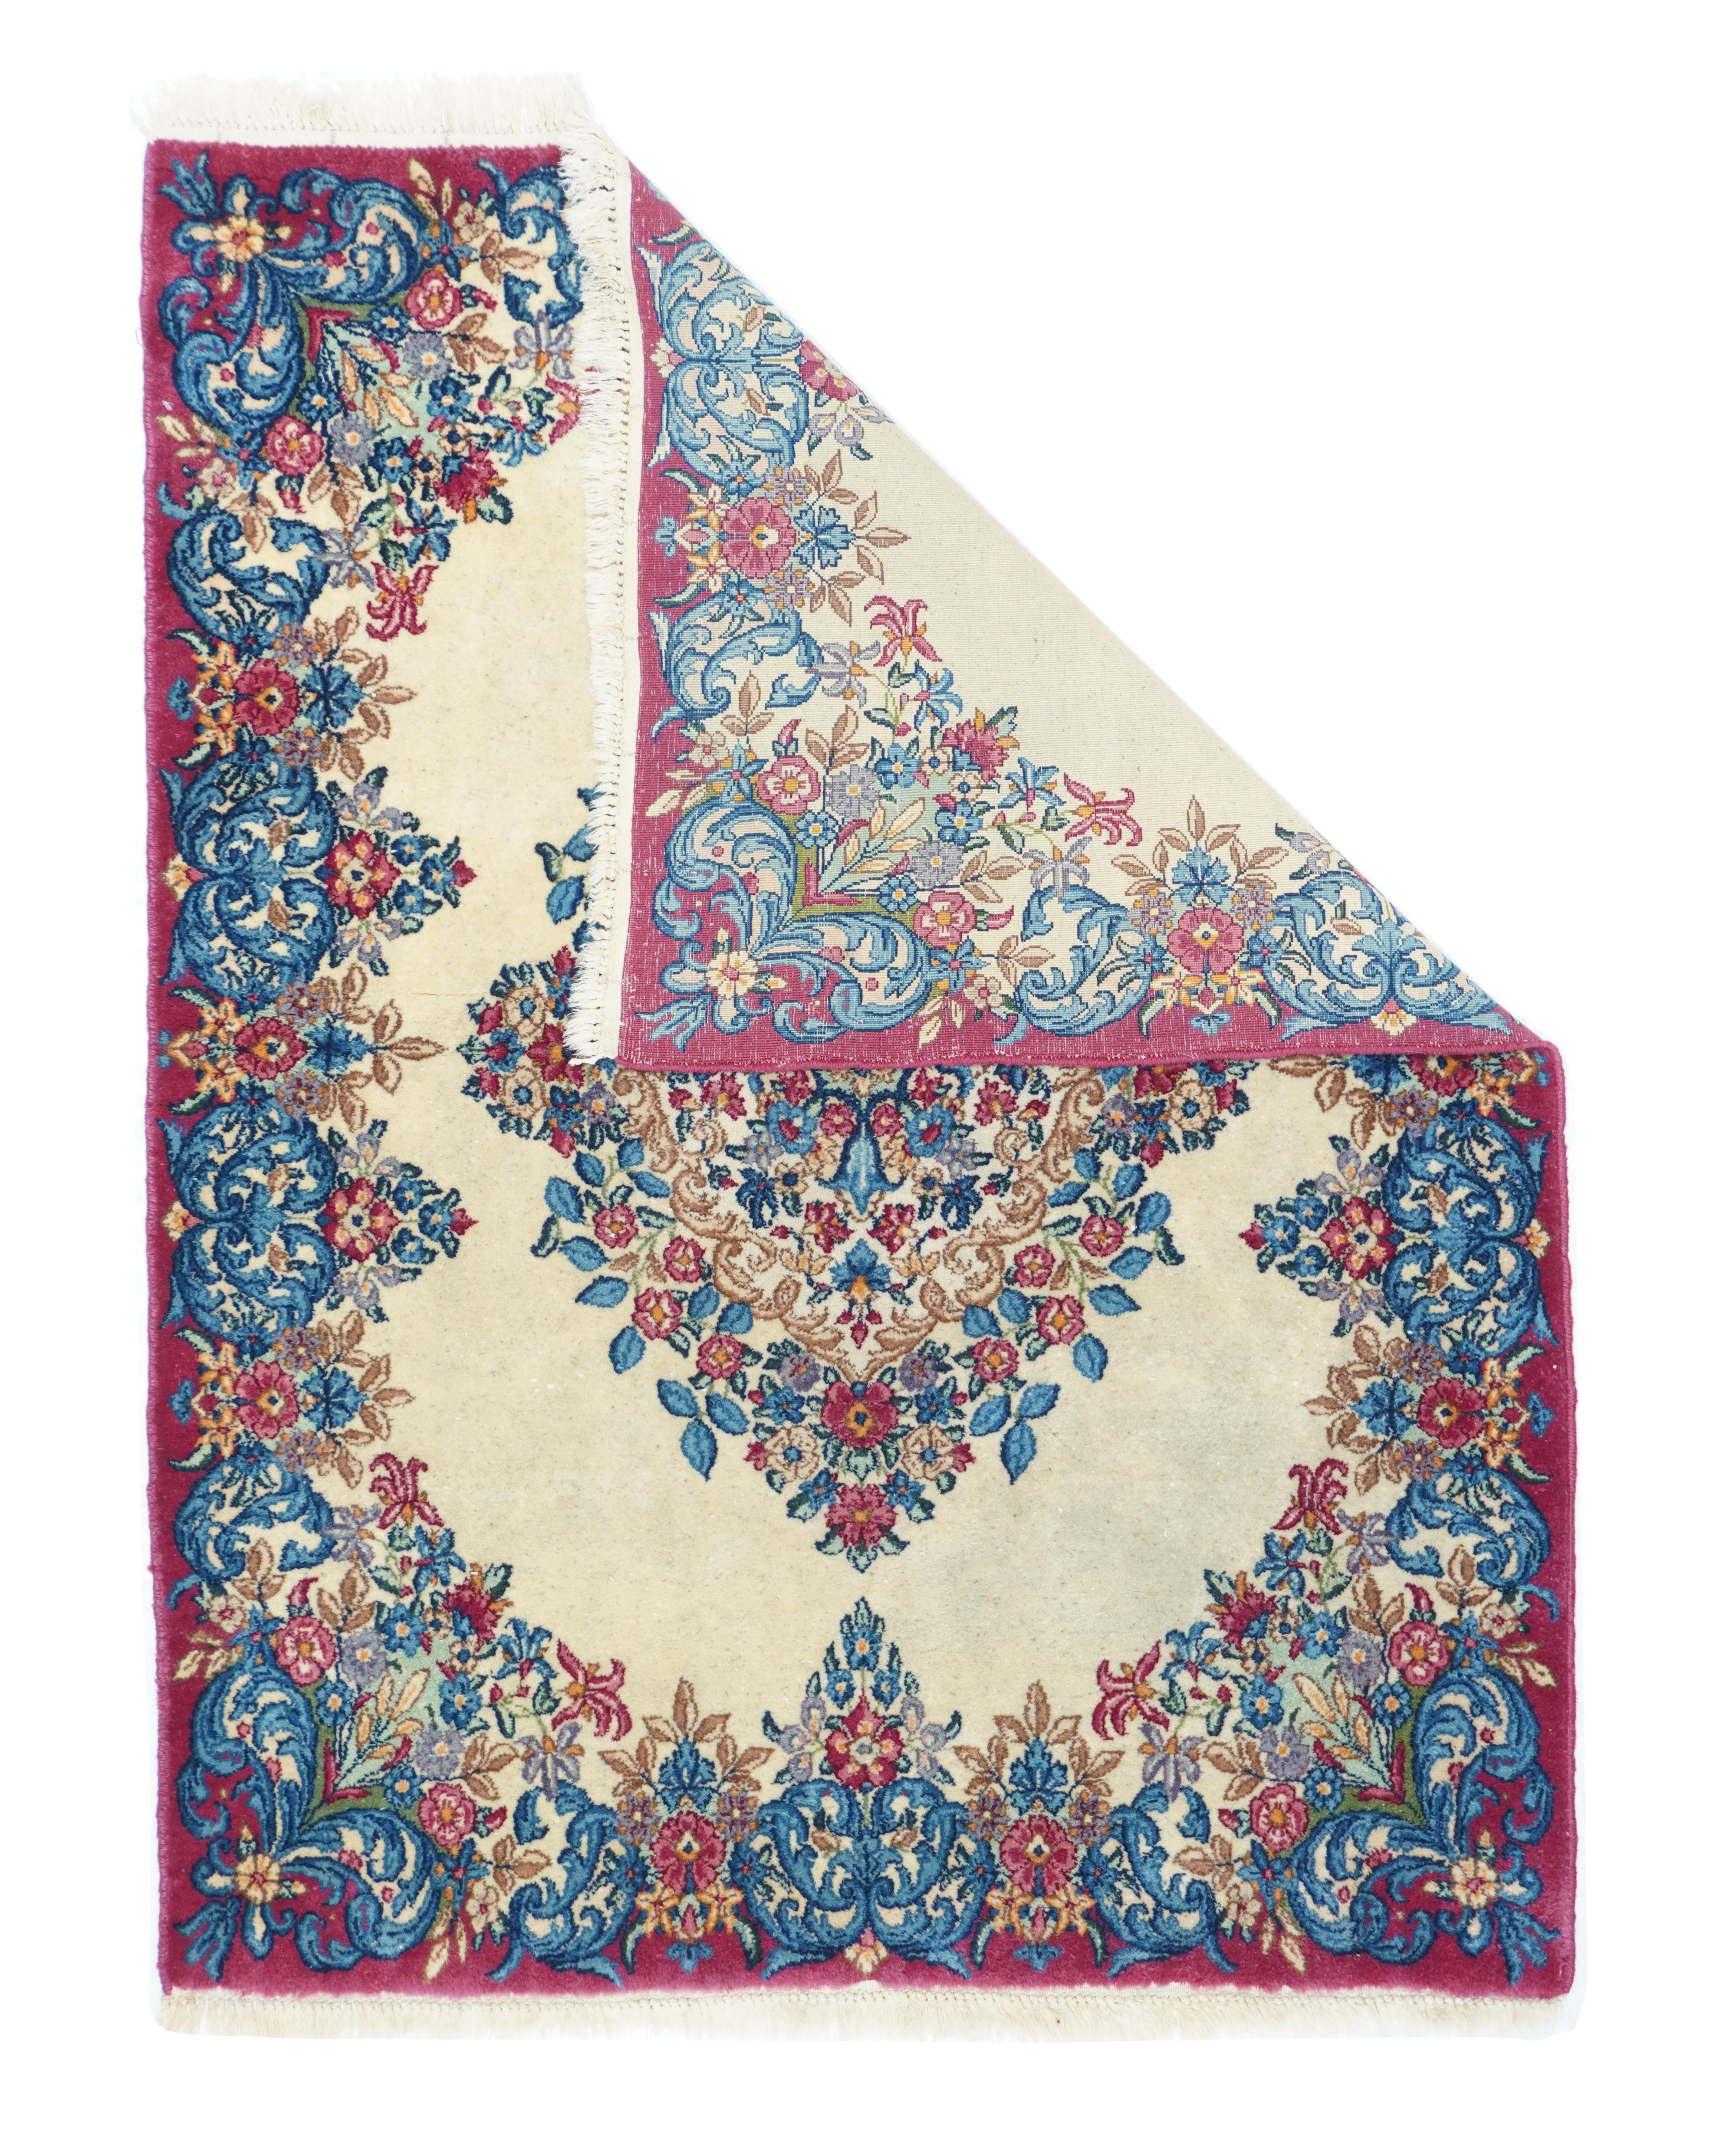 Vintage Kerman Lavar-Teppich¬†3'11'' x 5'3''. Das stroh- und elfenbeinfarbene, offene Feld dieses südpersischen urbanen Streubildes zeigt ein komplexes Blumenmedaillon mit hellblauen Rosetten und Blumenkränzen, die in Rot, Rosa, Hellblau und